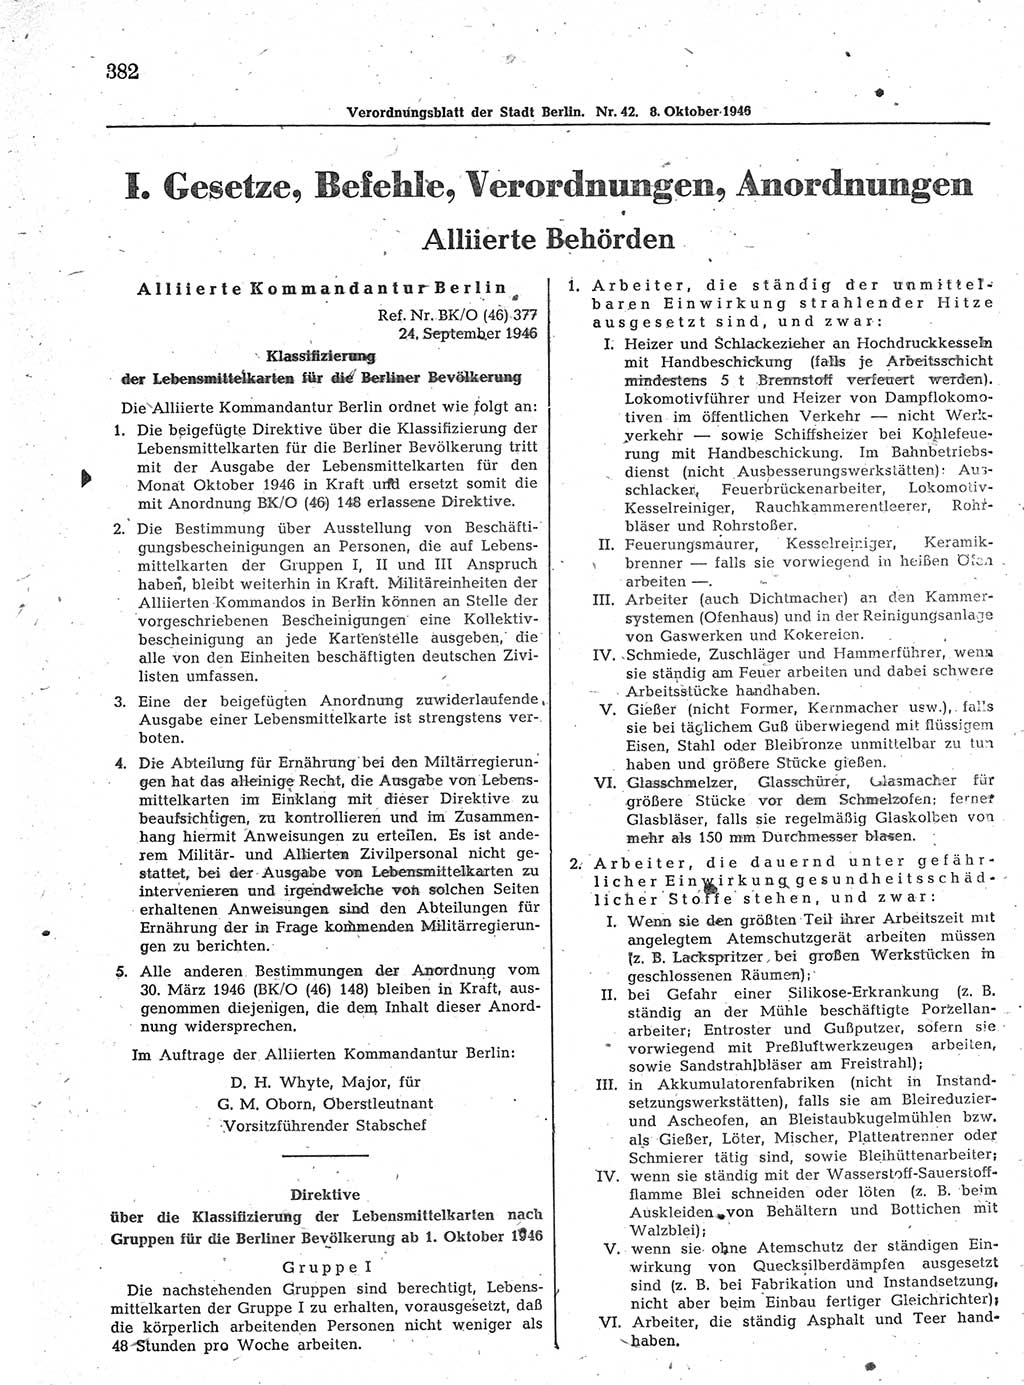 Verordnungsblatt (VOBl.) der Stadt Berlin, für Groß-Berlin 1946, Seite 382 (VOBl. Bln. 1946, S. 382)